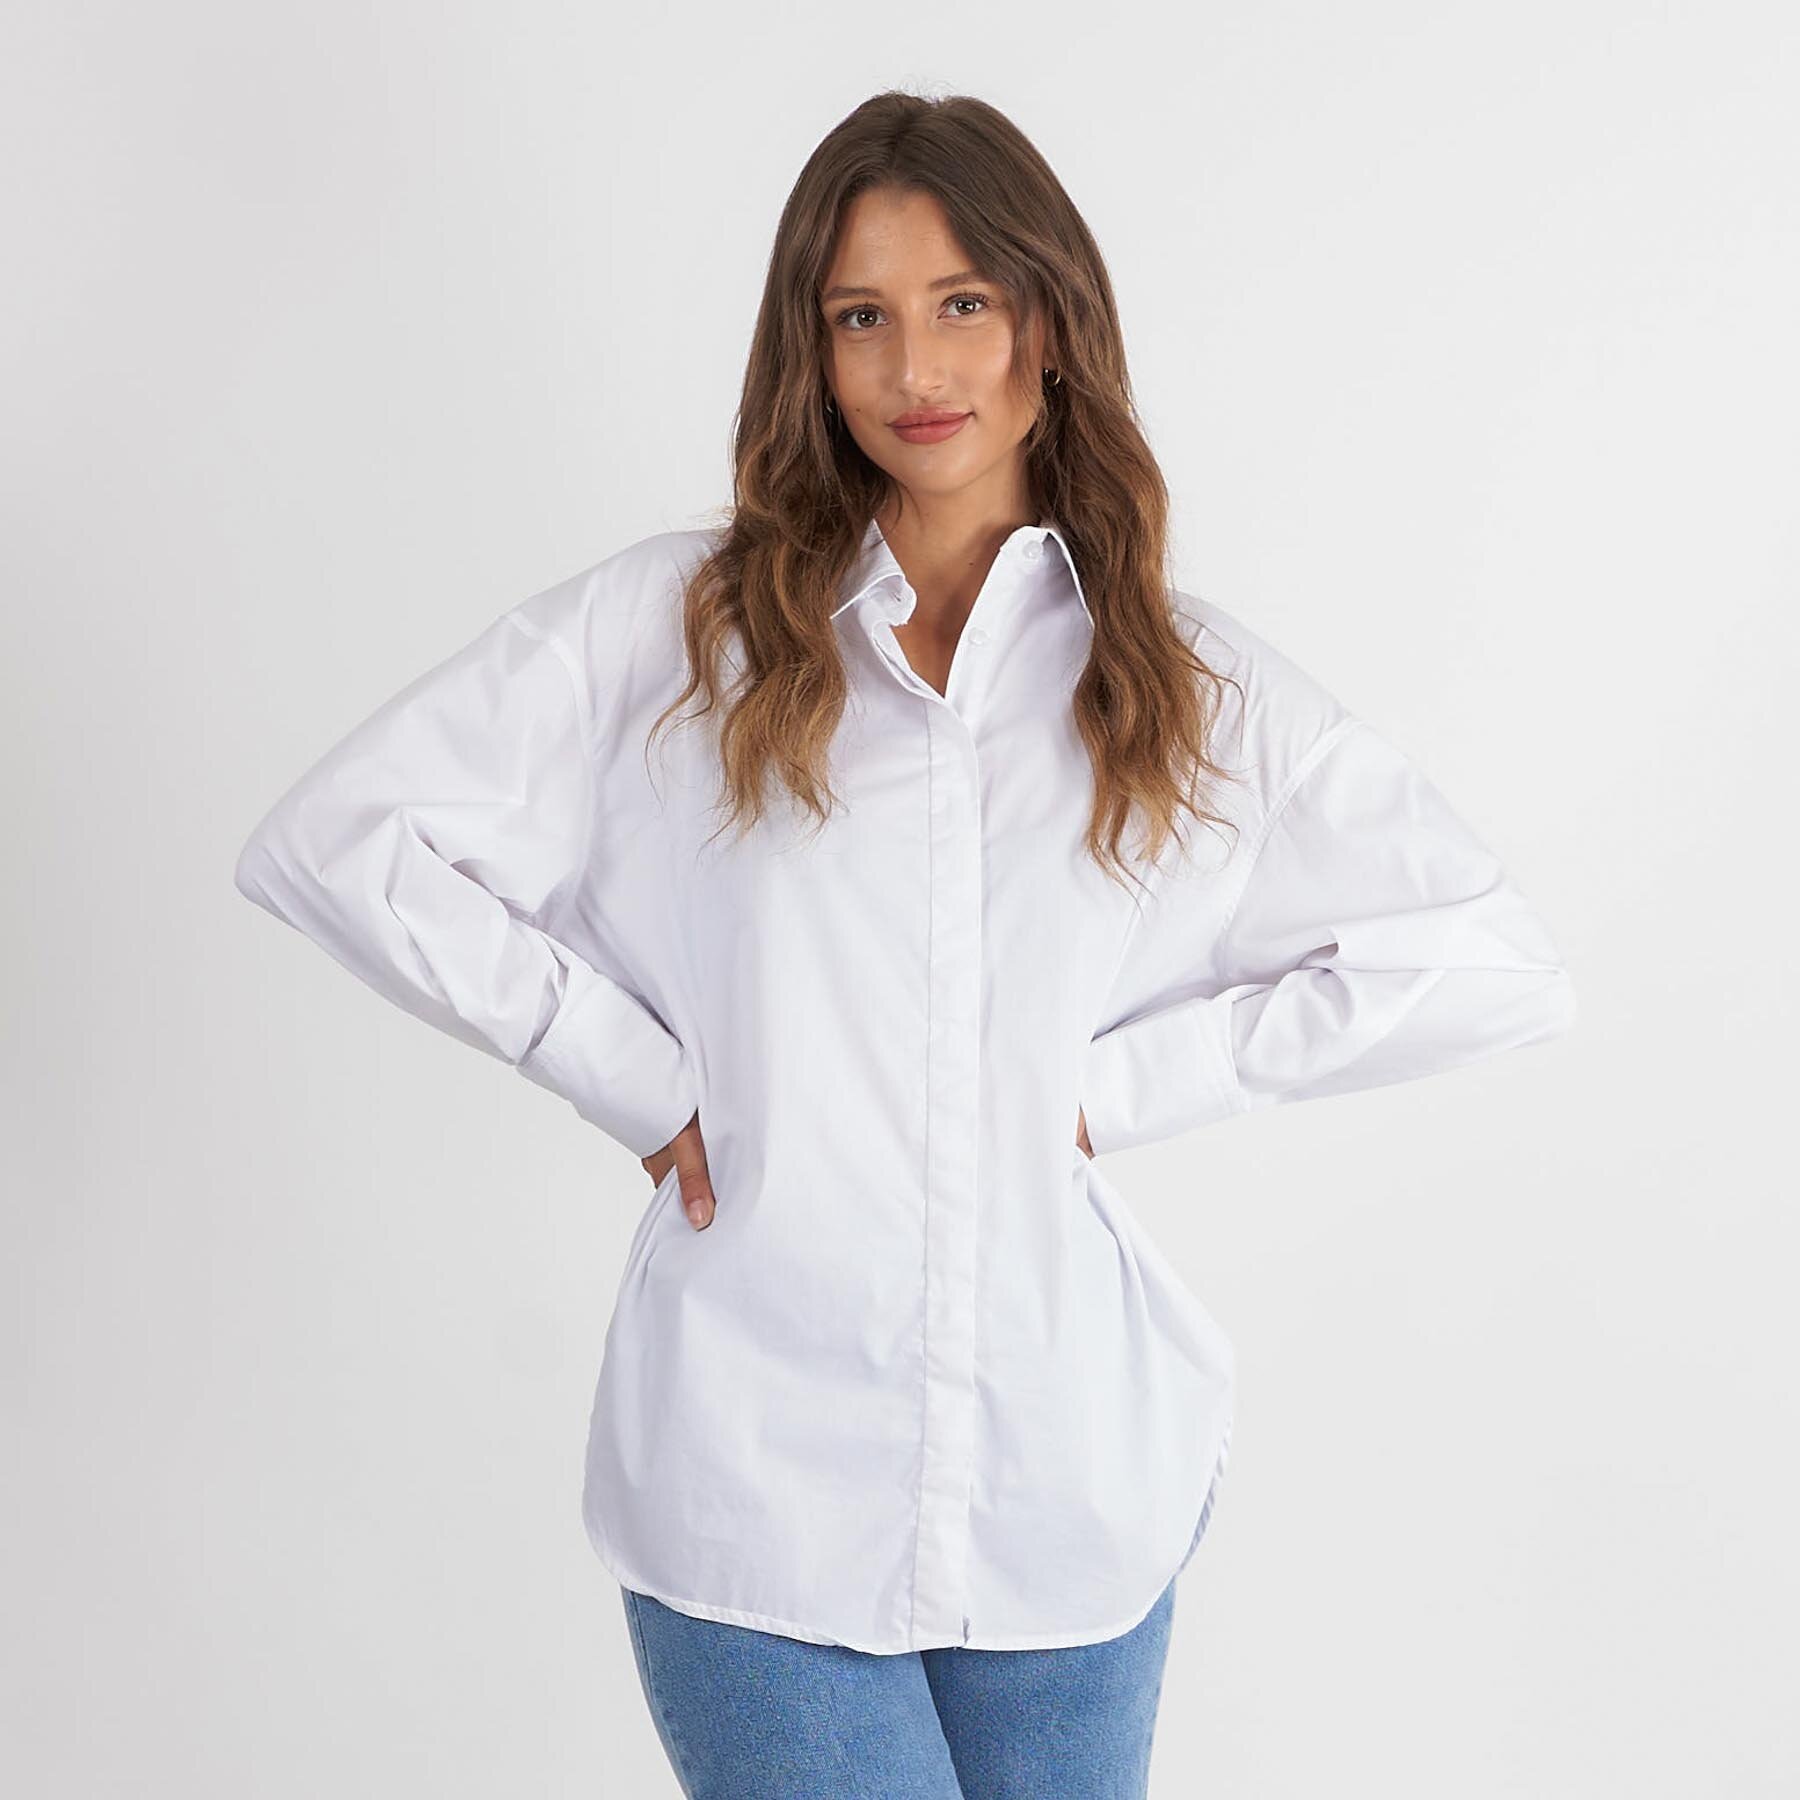 Pure friday - Purjosefine shirt - Bluser og skjorter til kvinder - Hvid - M